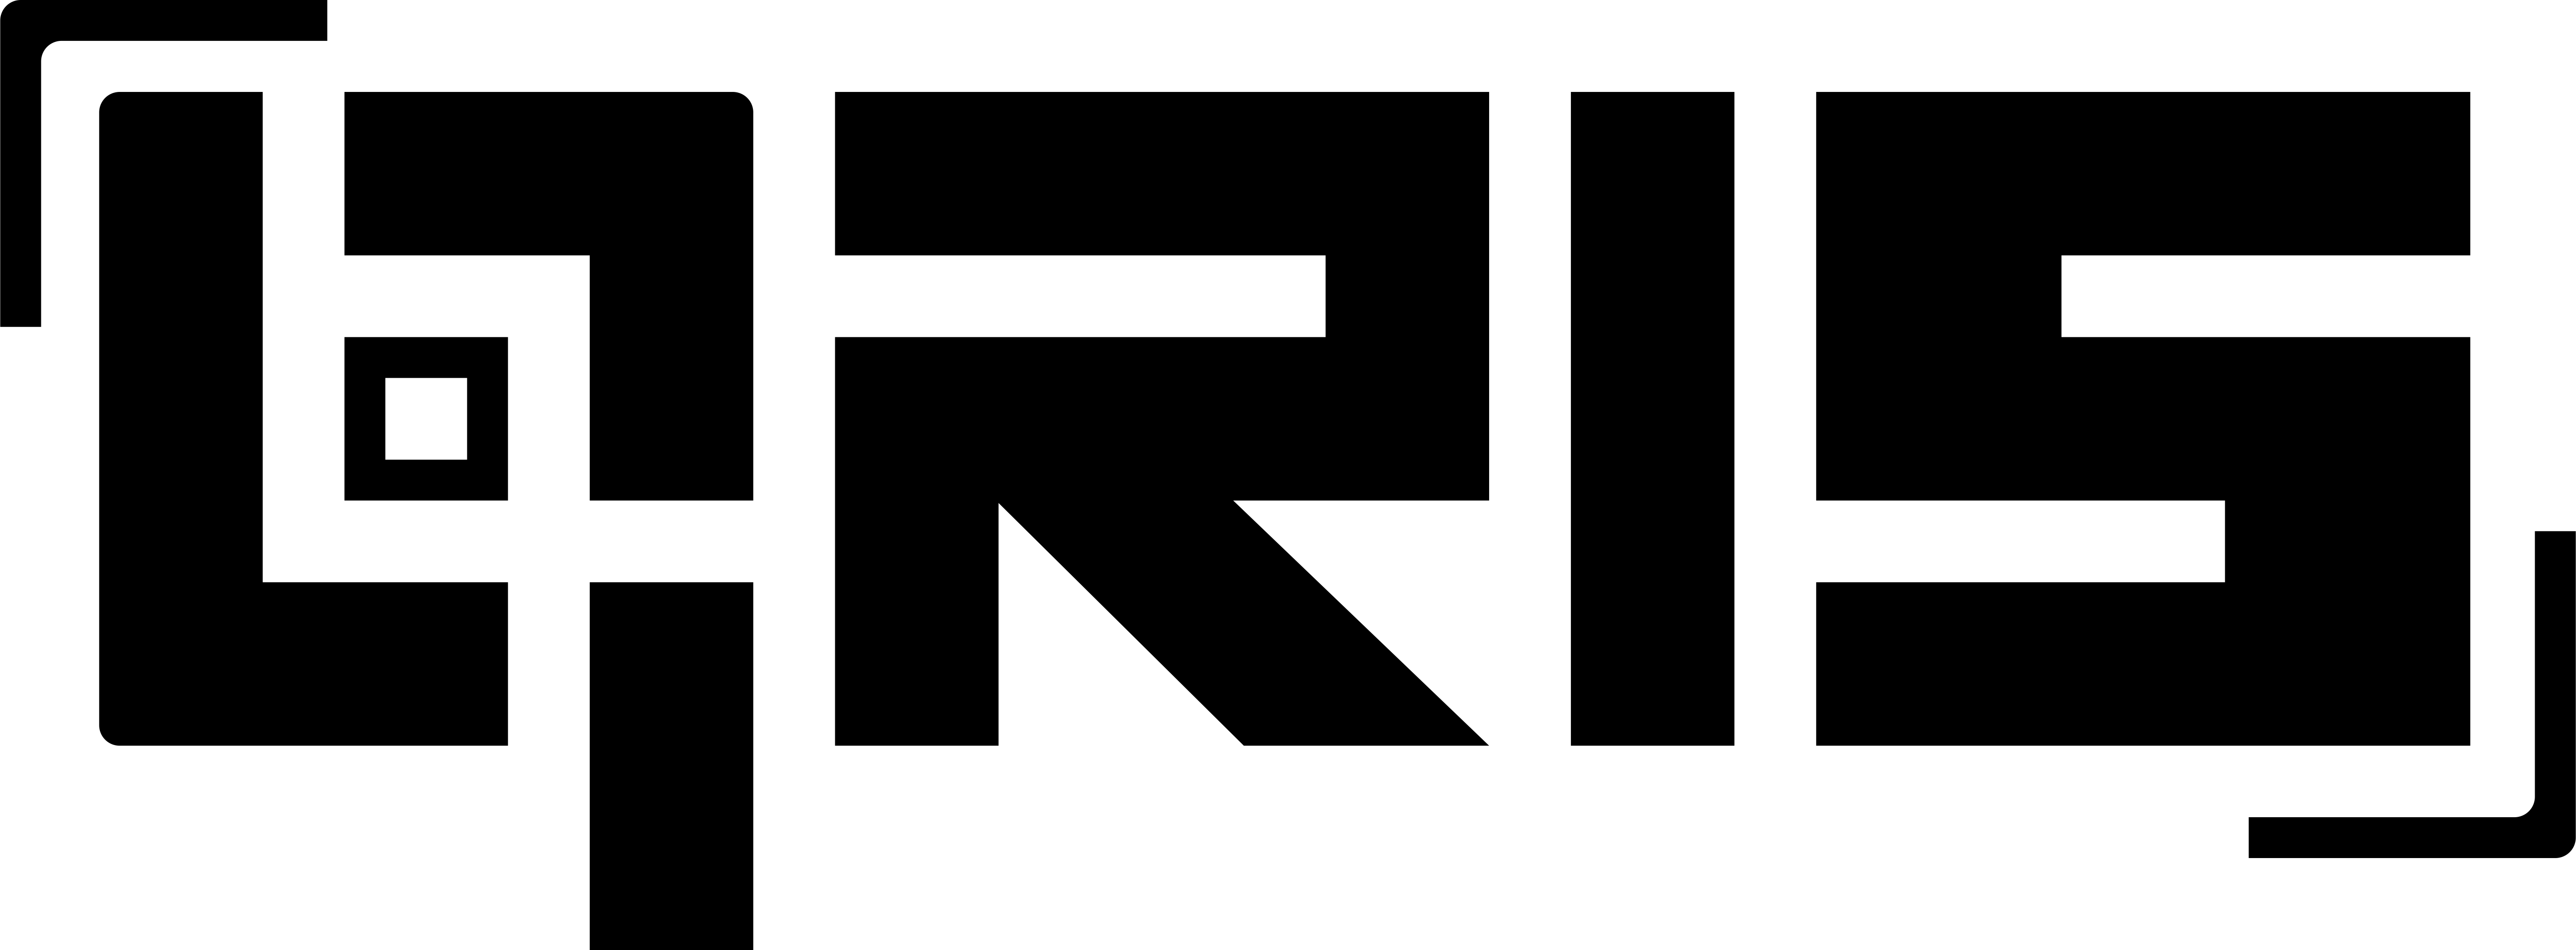 716072156id. QR С логотипом. Qris logo. EKASSIR лого. GAISF лого.